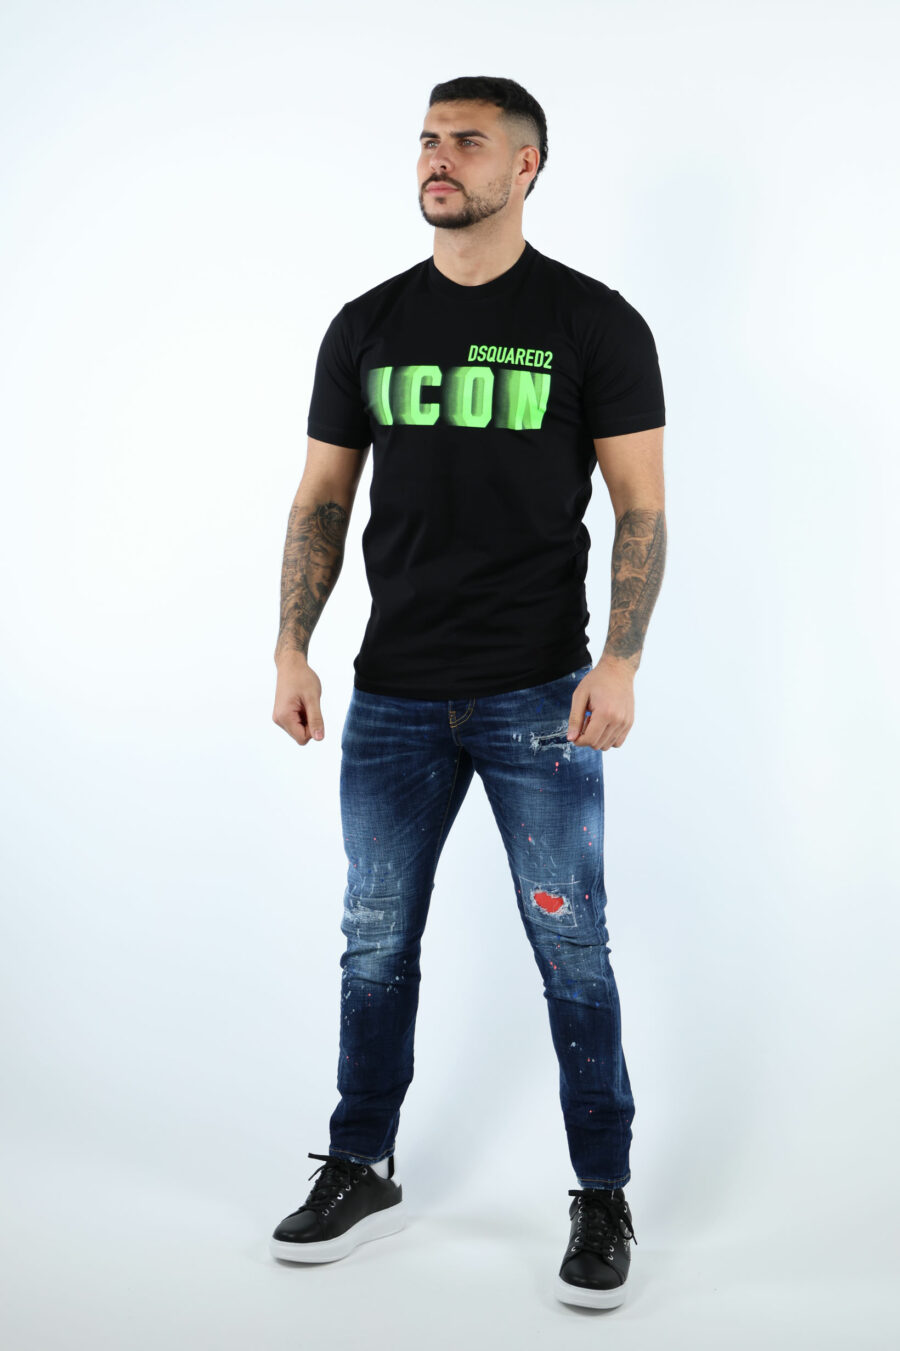 T-shirt preta com maxilogo "ícone" esbatido em verde néon - 106920